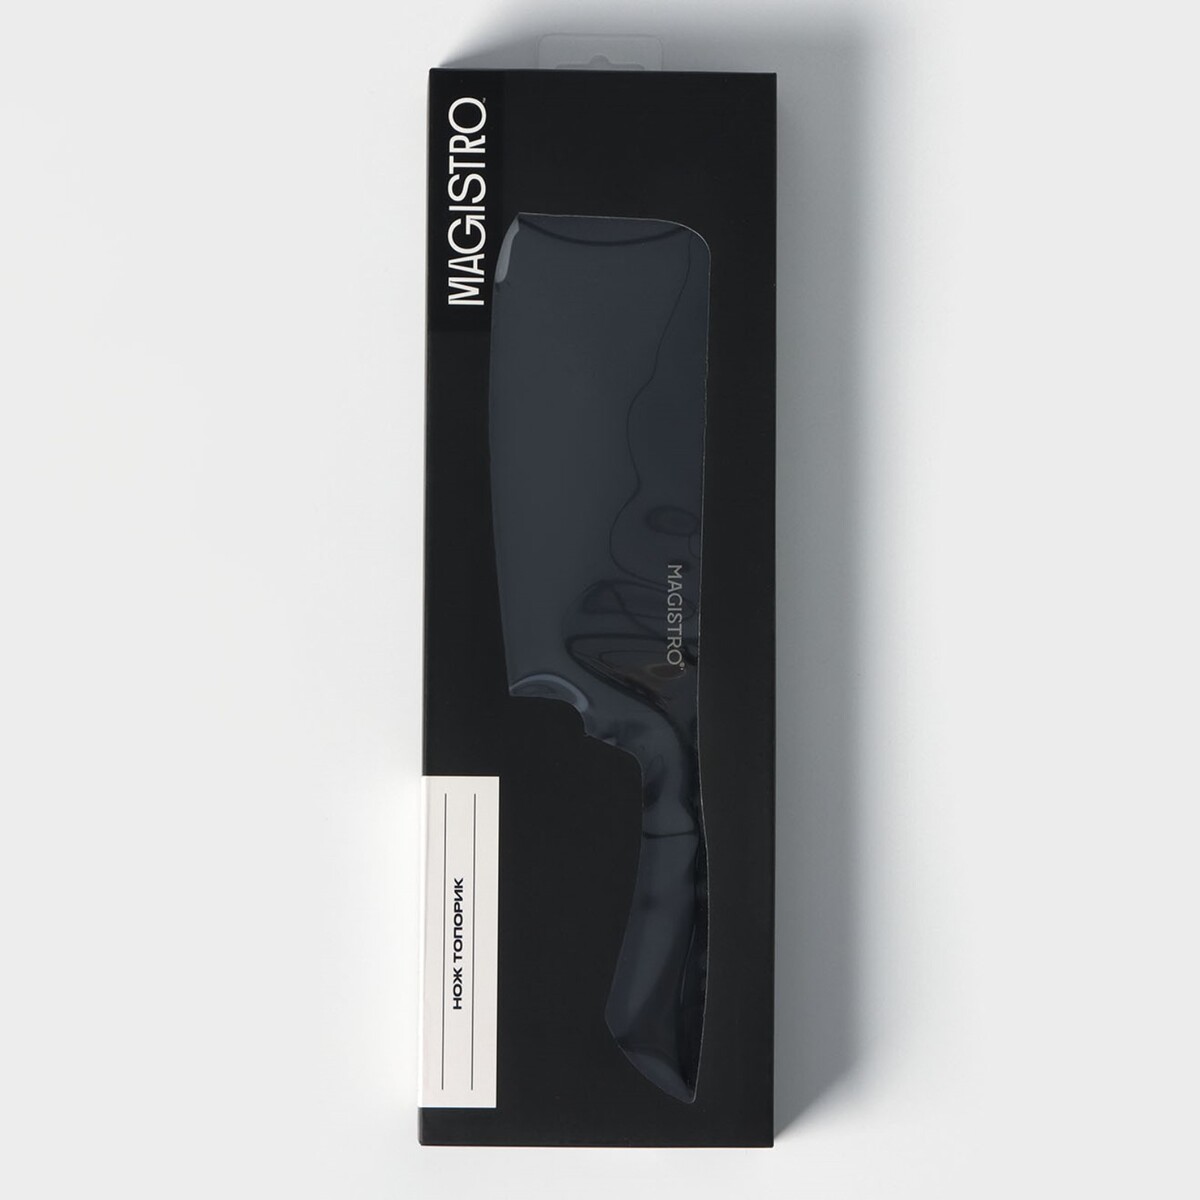 фото Нож кухонный топорик magistro vantablack, длина лезвия 20,3 см, цвет черный